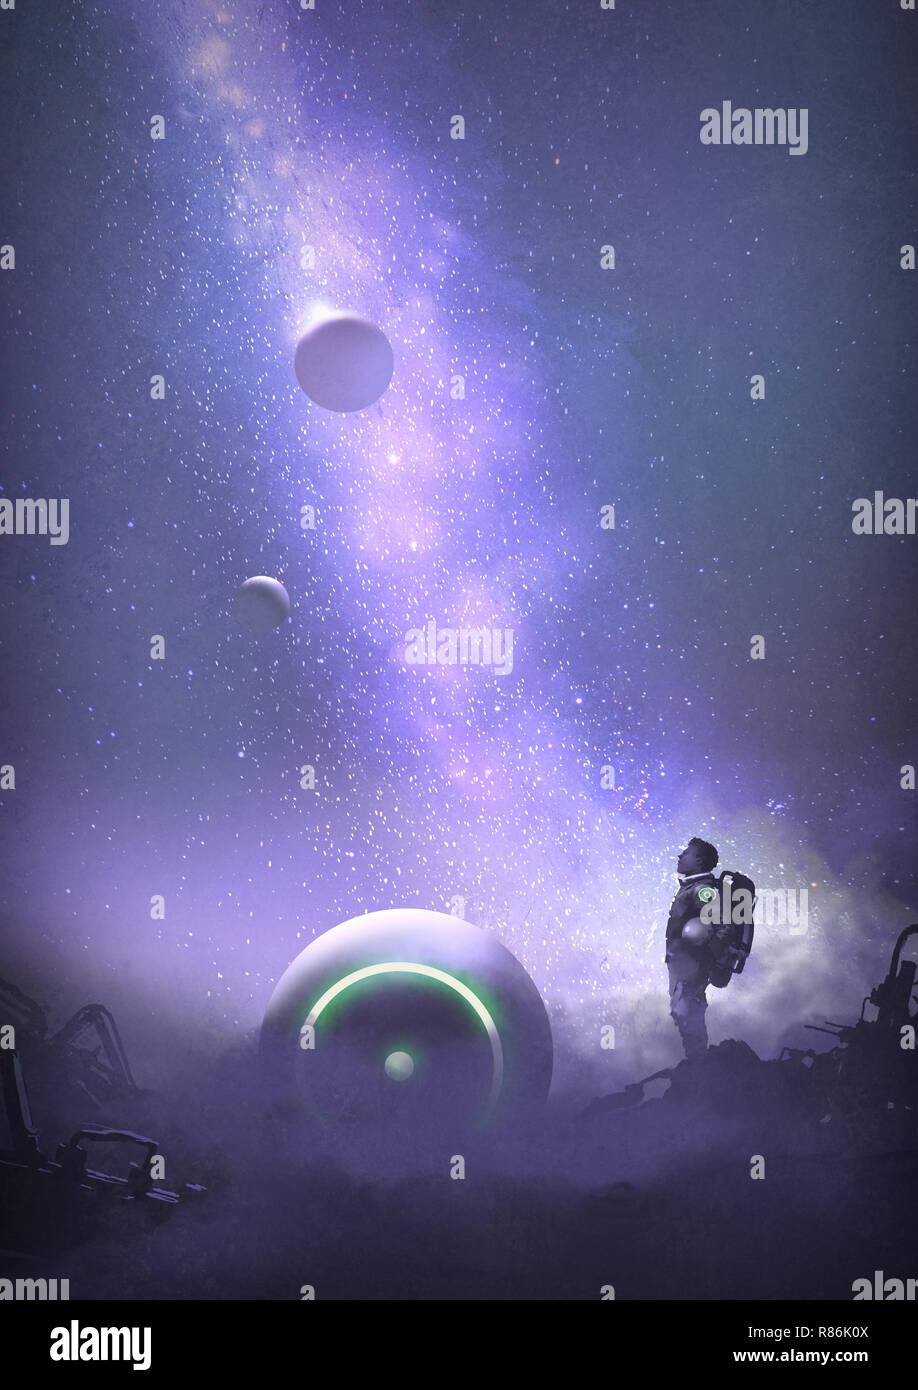 Astronaut auf verlassenen Planeten am Sternenhimmel suchen, digital art Stil, Illustration Malerei Stockfoto